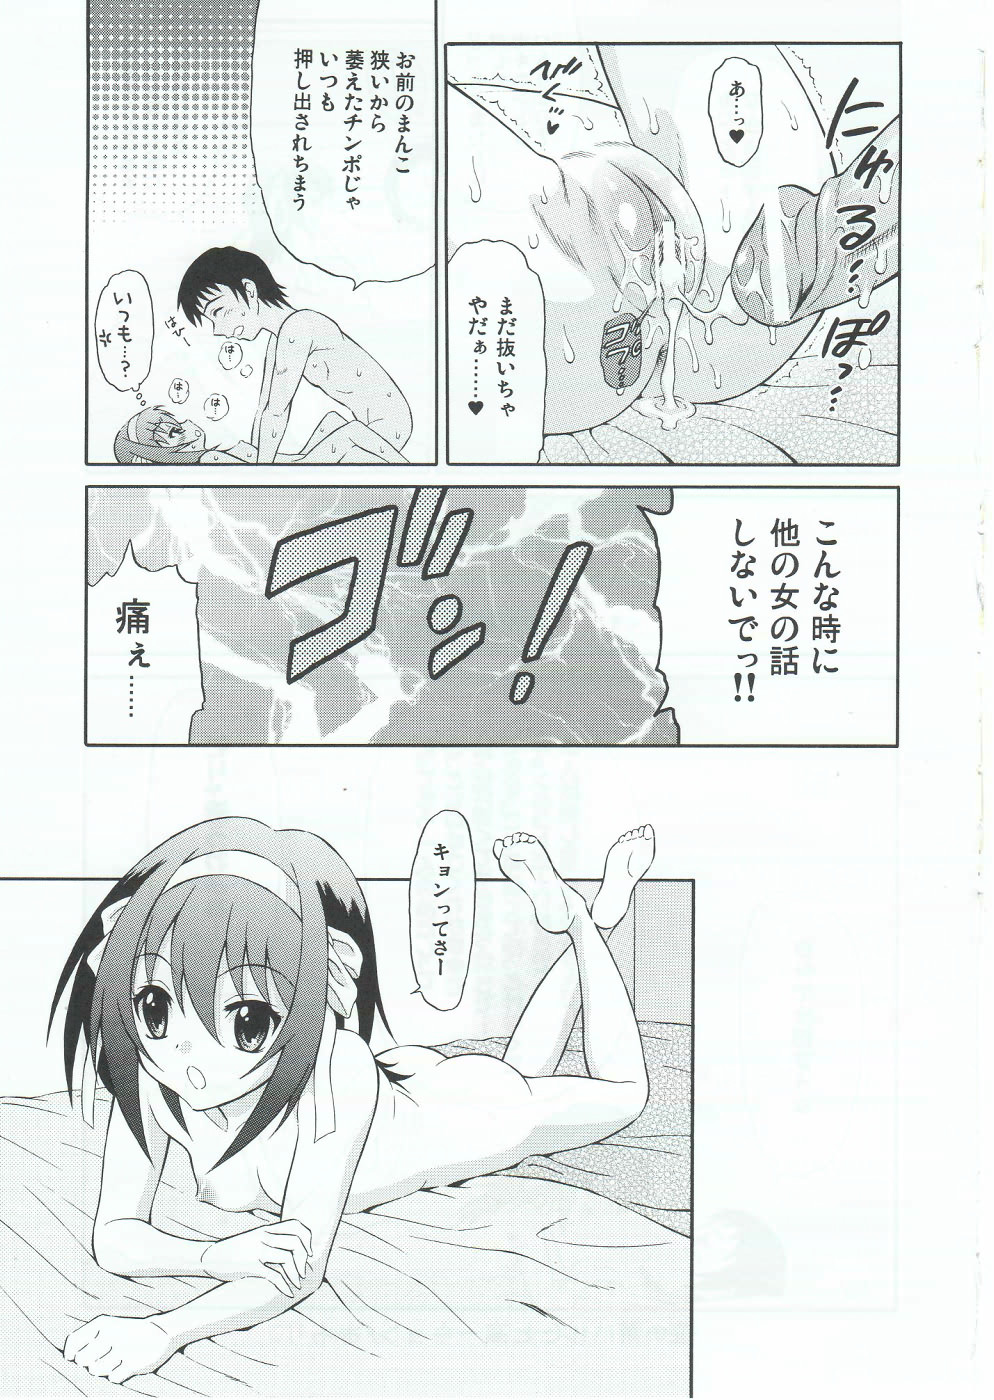 (SC46) [GUST (Harukaze Soyogu)] Sasa no Ha Haruhi to Kouichi Kyon. (Suzumiya Haruhi no Yuuutsu [The Melancholy of Haruhi Suzumiya]) page 22 full